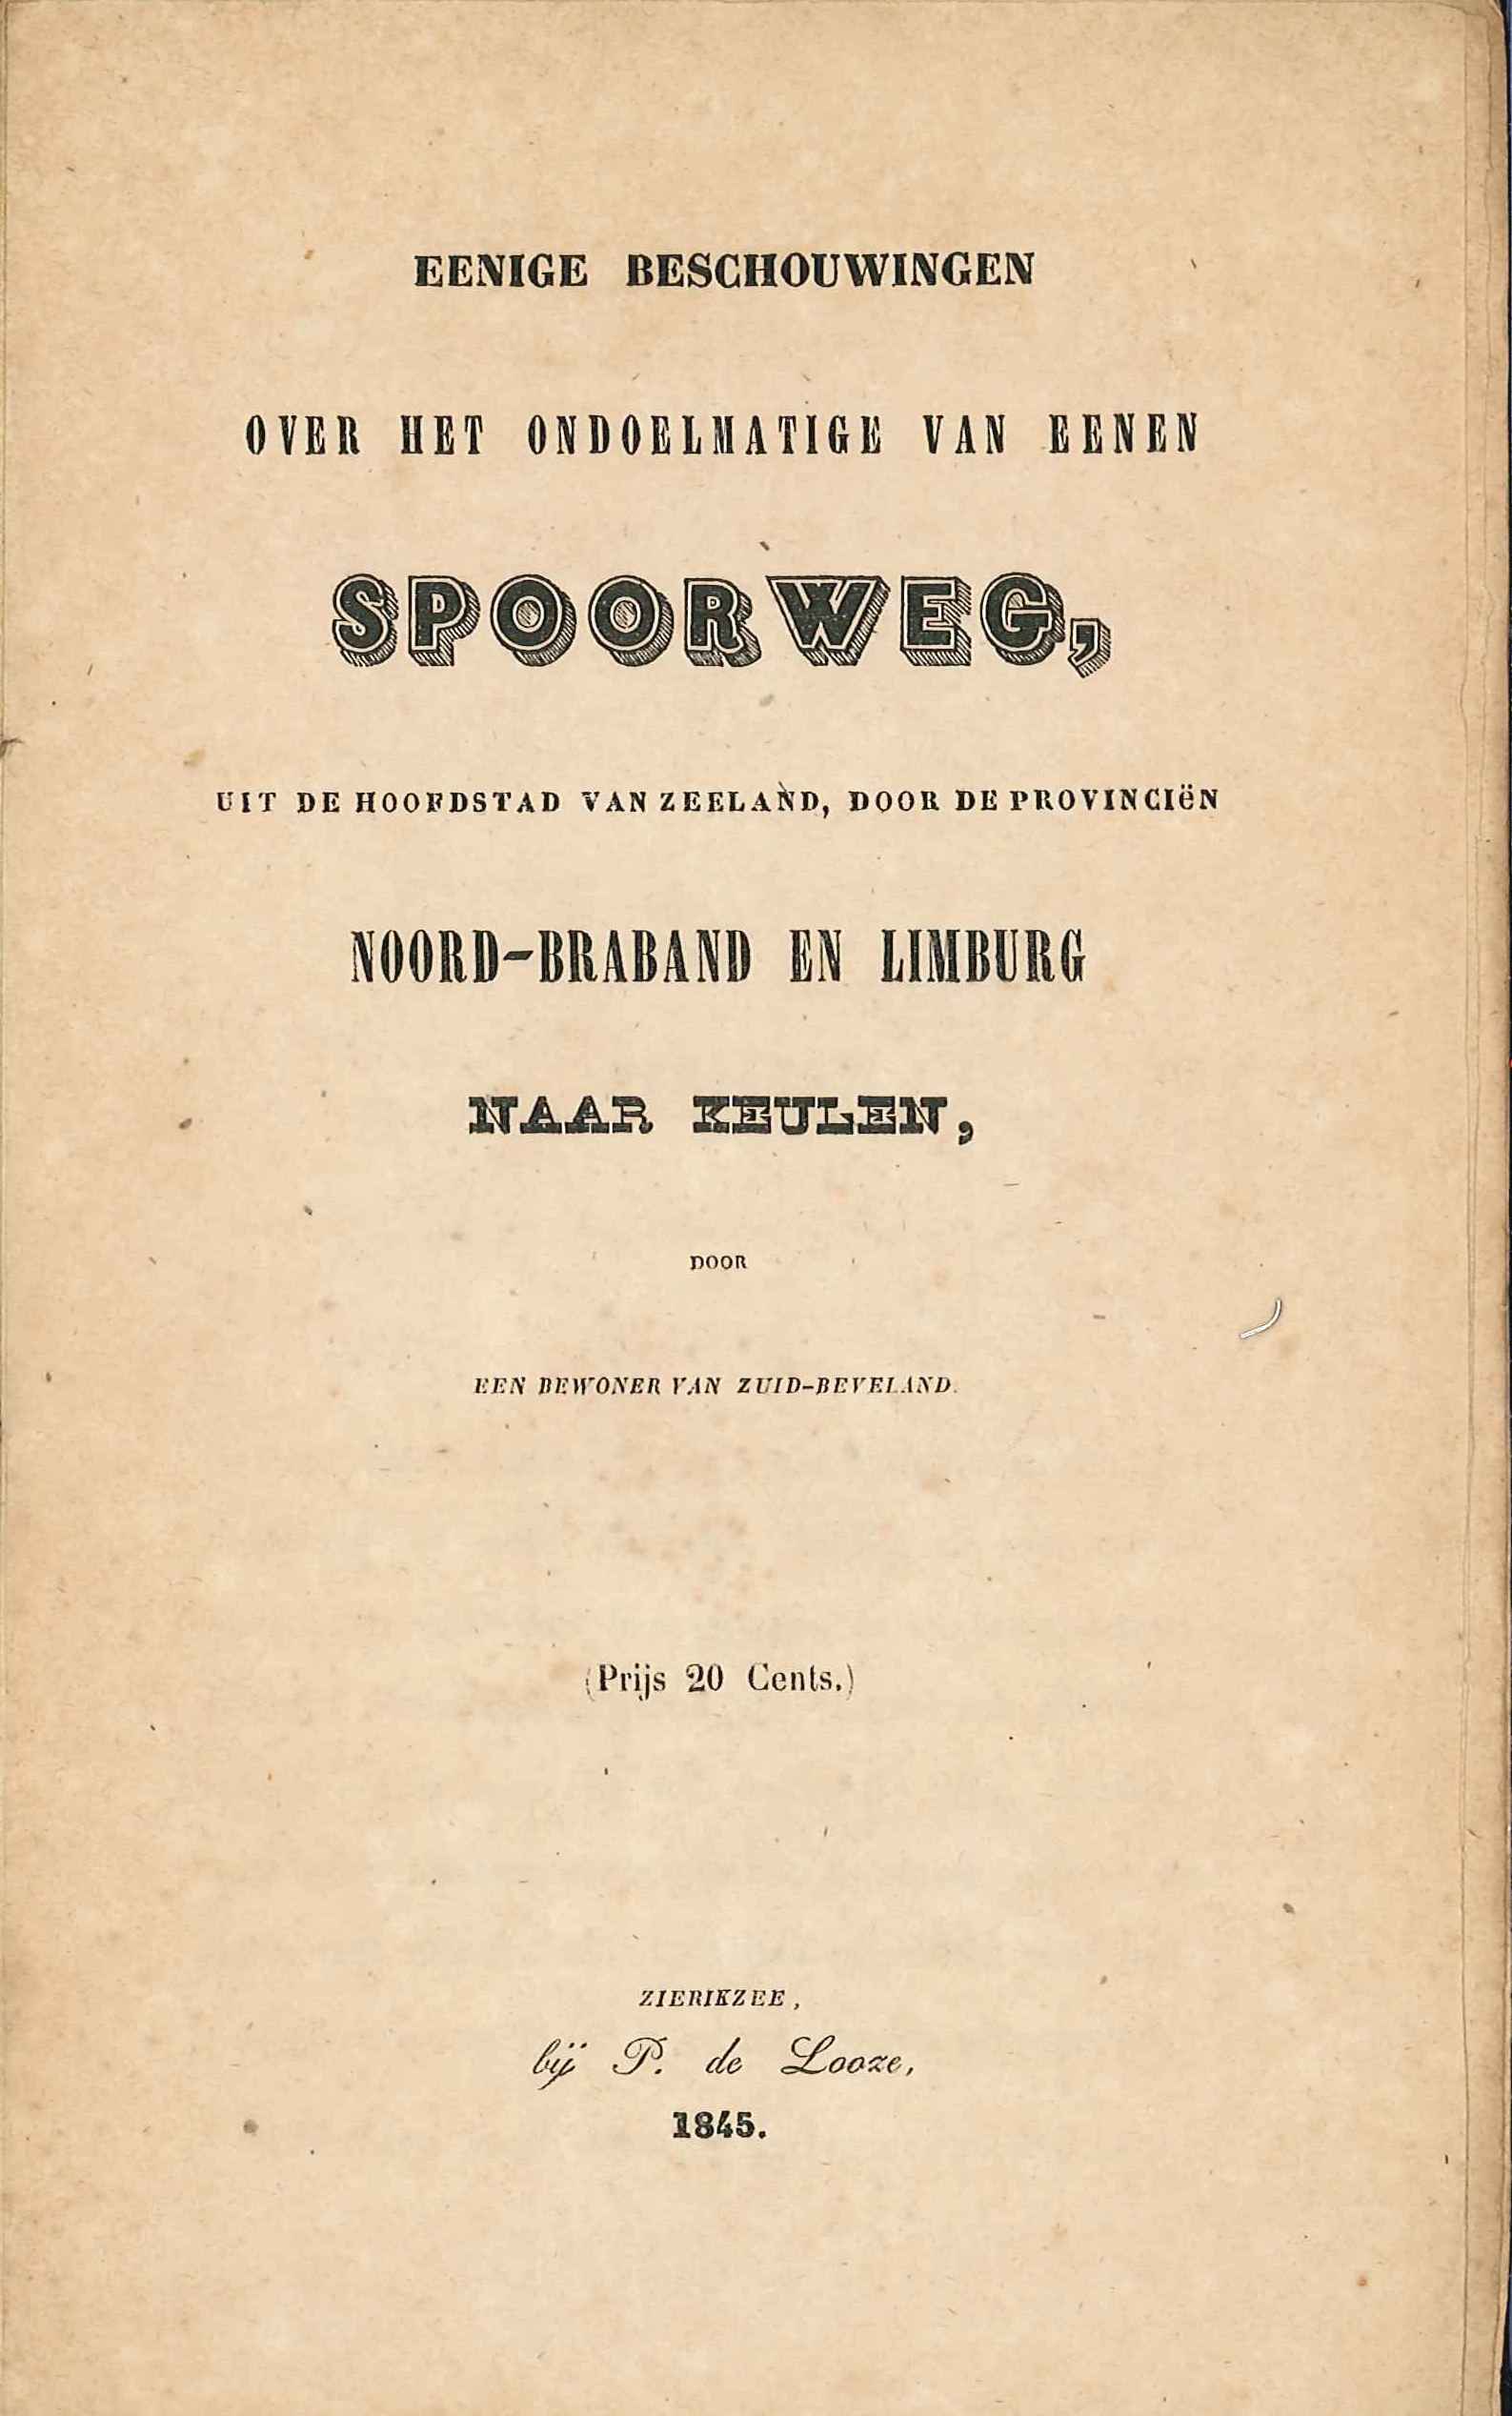 Titelblad van een anonieme brochure tegen de aanleg van een spoorlijn door Zeeland, Zierikzee 1845. GAG.HB.